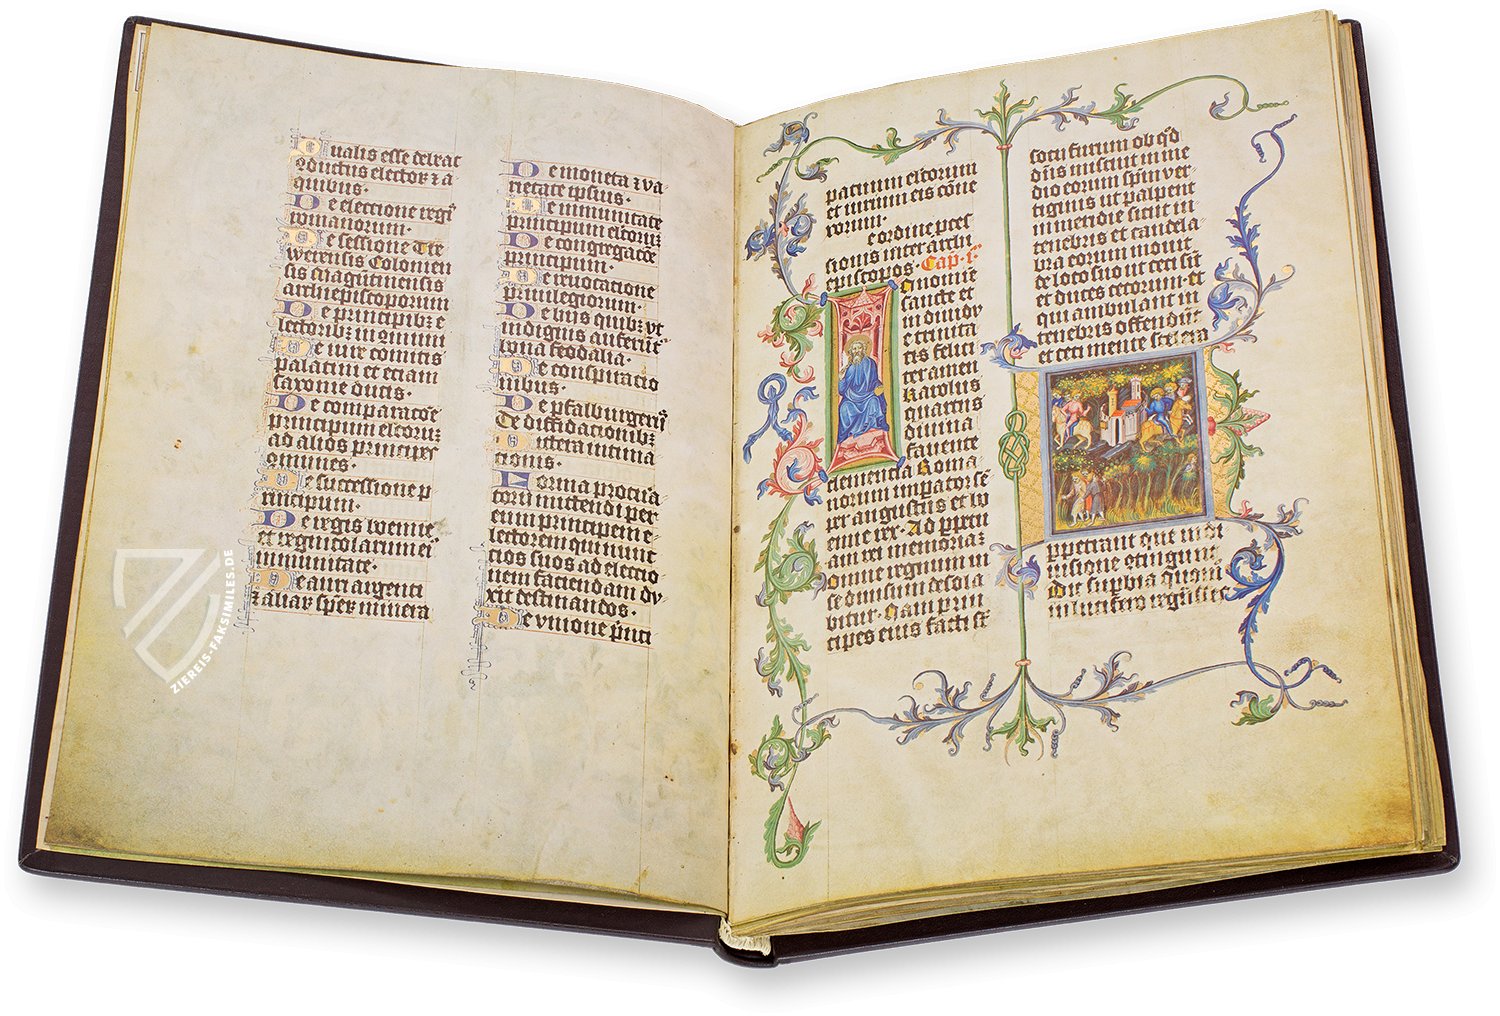 Ein prächtig illuminiertes Exemplar der Goldenen Bulle für König Wenzel IV. (Goldene Bulle, Prag (Tschechische Republik) — 1400)